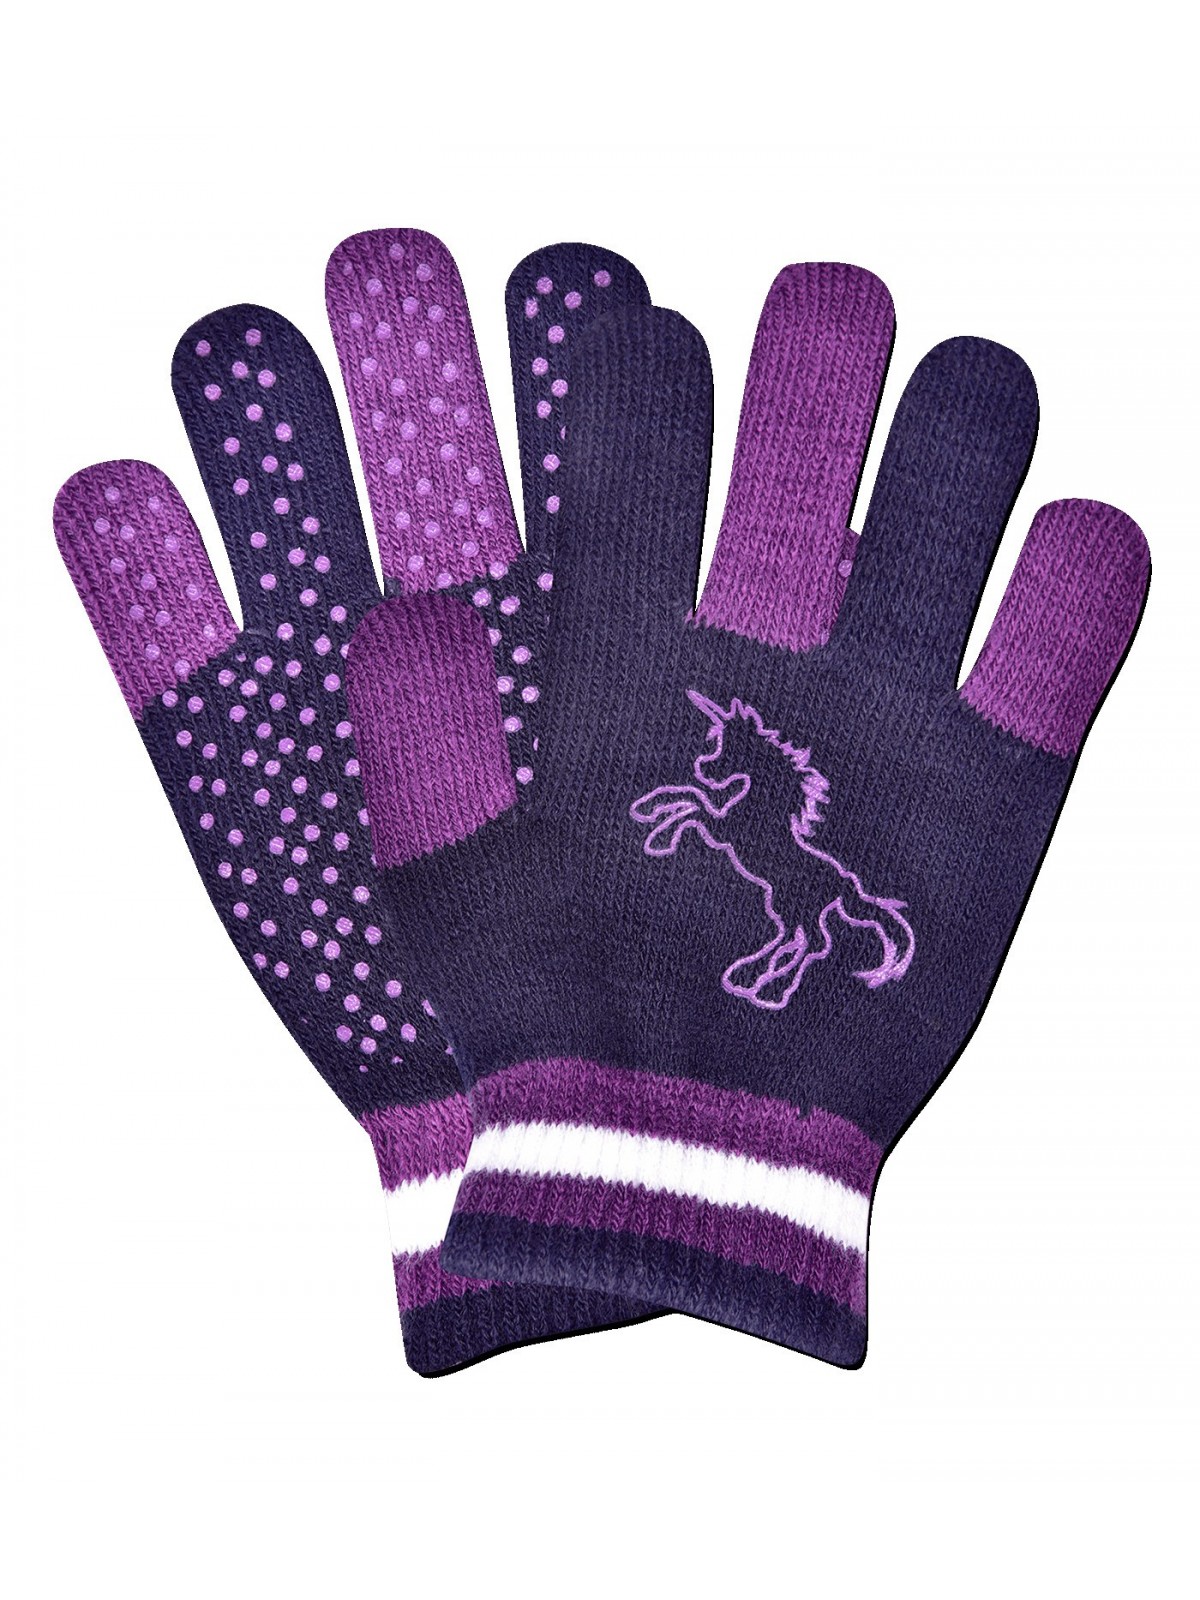 Children gloves Magic Grippy Unicorn, Kids